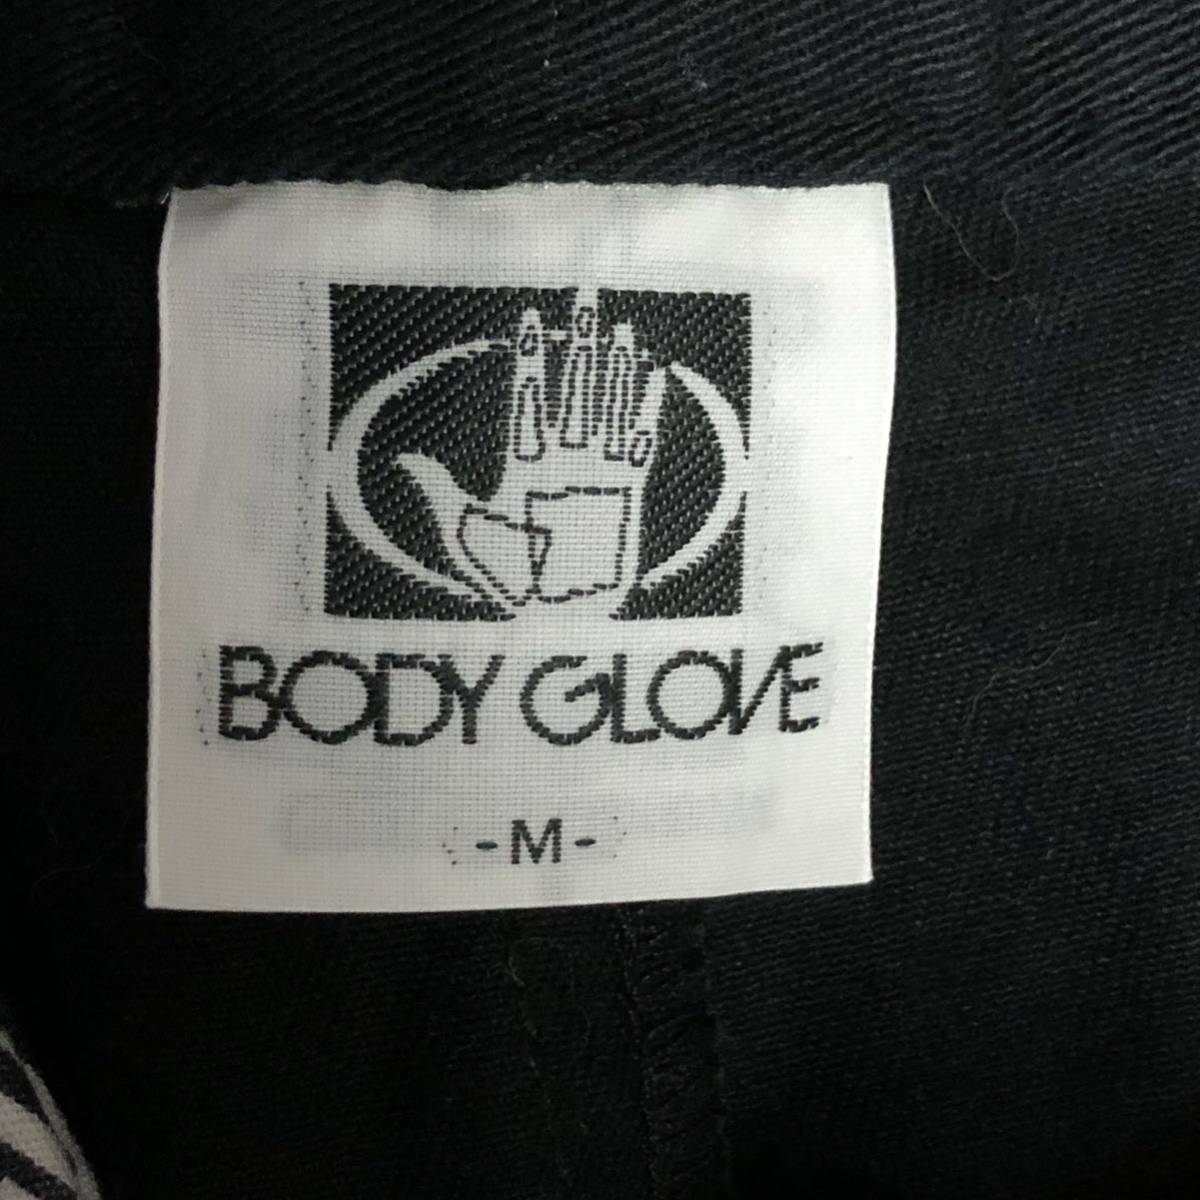 【BODY GLOVE】ボディグローブ パンツ 黒 ブラック 綿100% テーパード 刺しゅう メンズ タウンユース カジュアル ボトムス M/Y2185BB_画像8